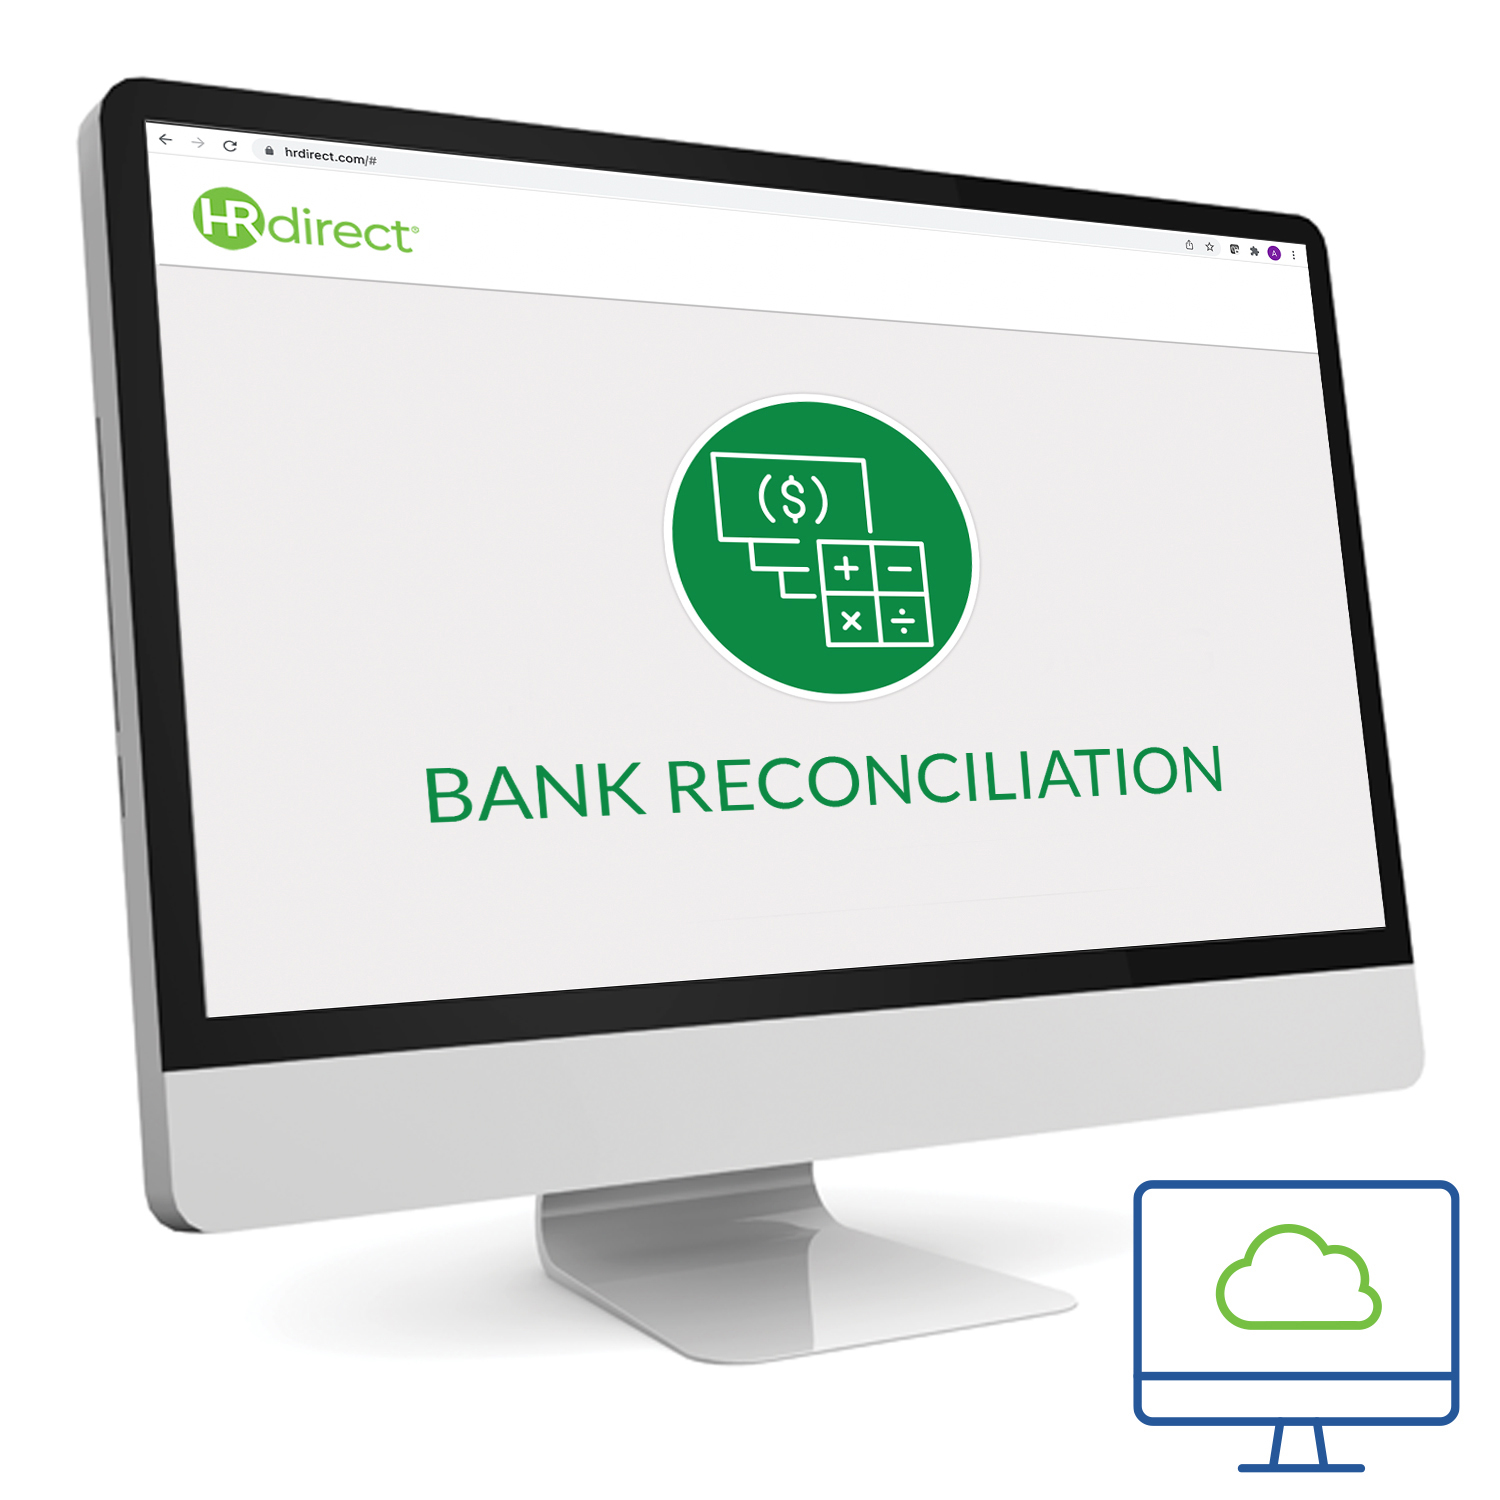 Bank Reconciliation Pre-Employment Test